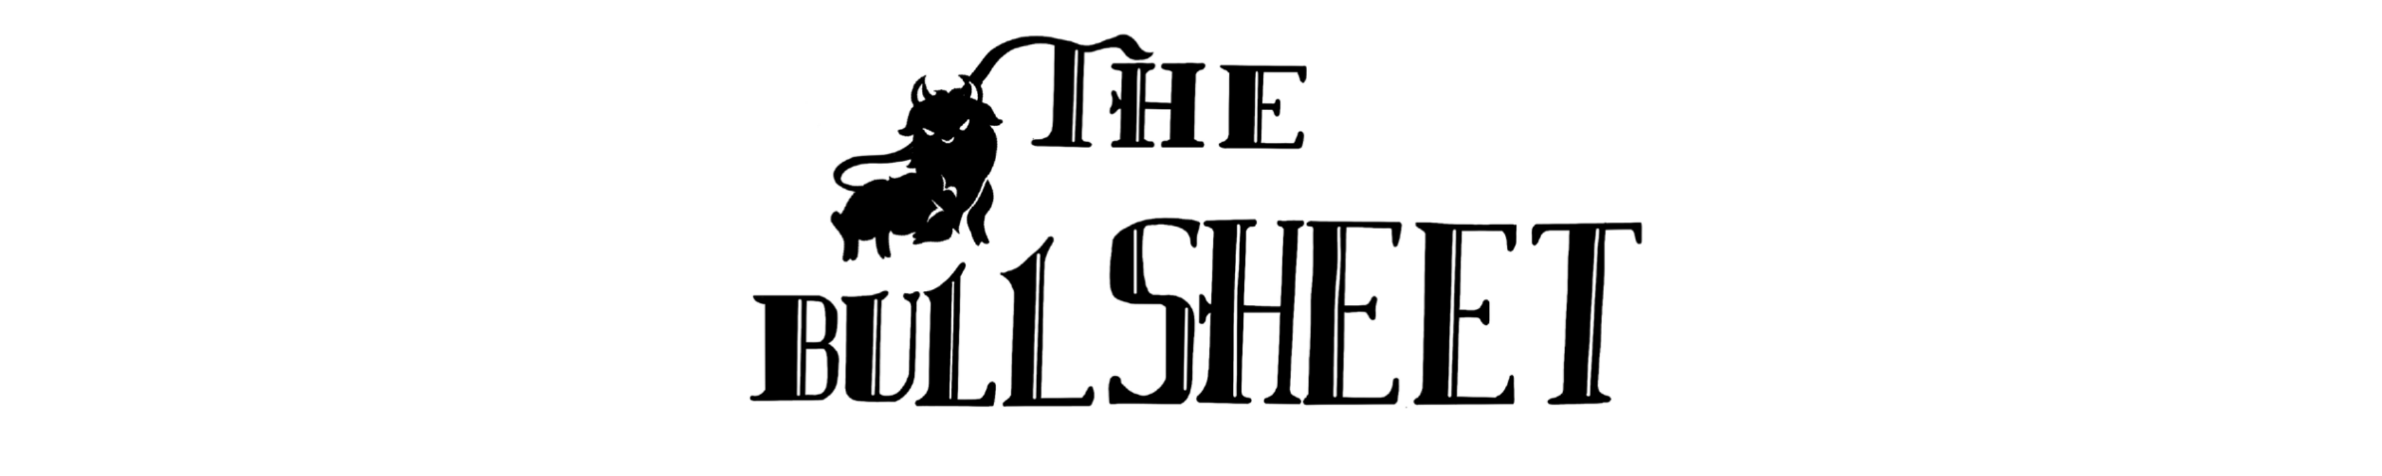 The Bullsheet